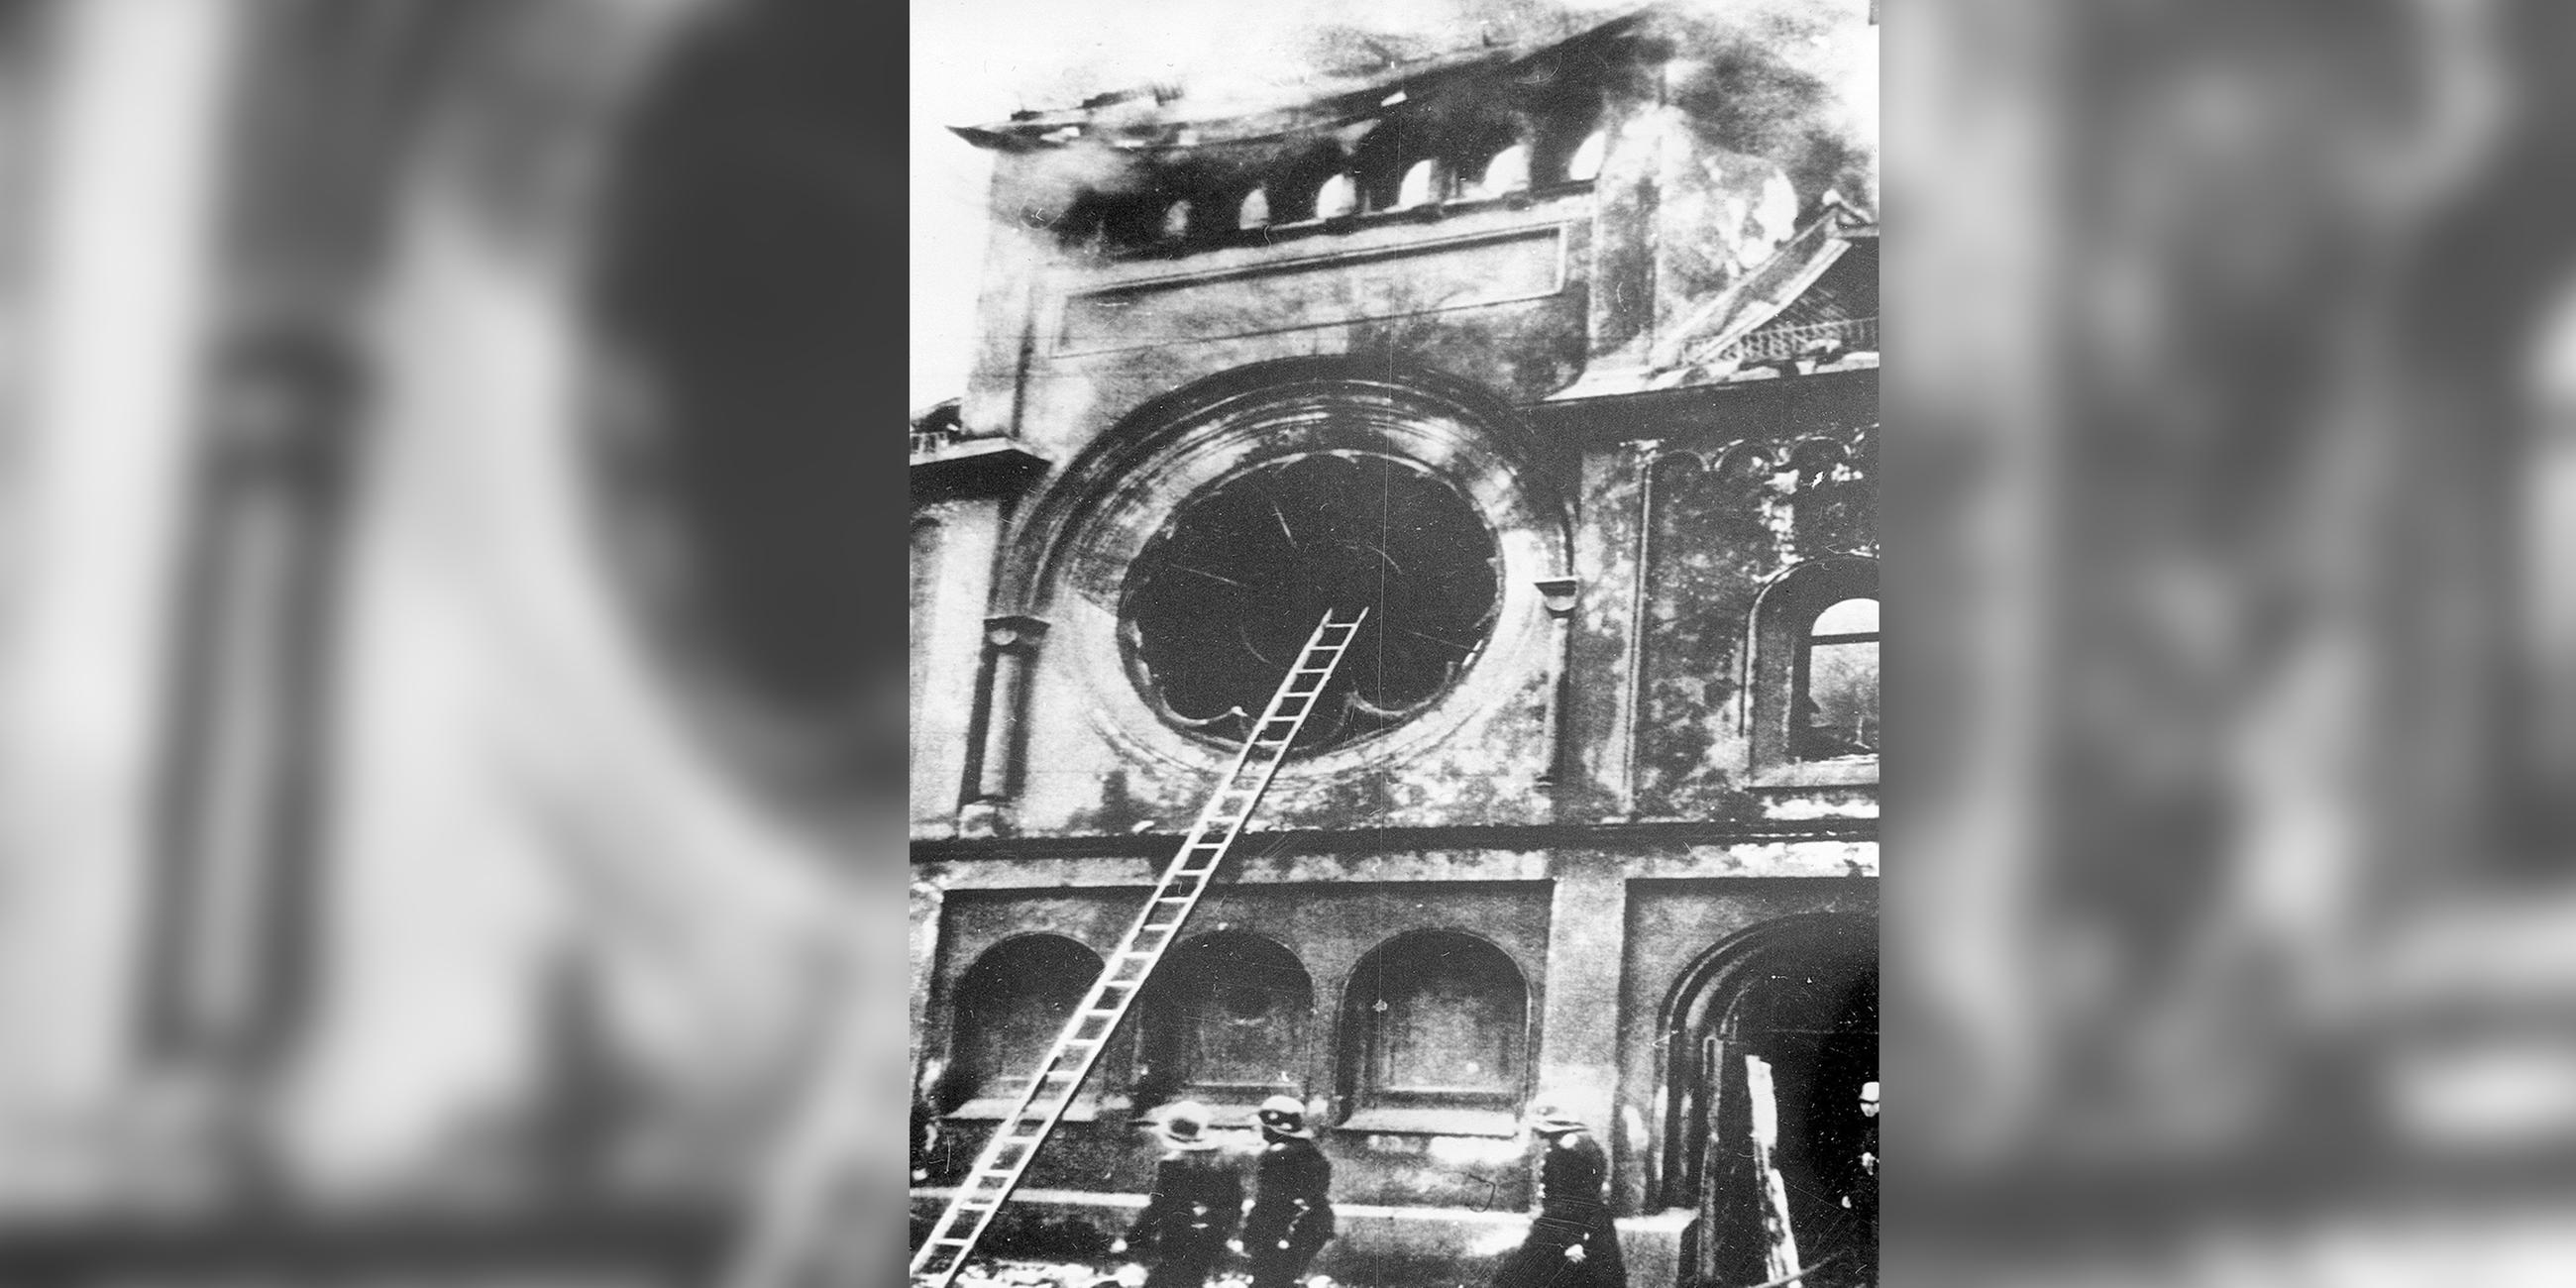 •	Organisierte Schlägertrupps der SA, der Hitlerjugend und anderer NS-Organisationen setzen jüdische Geschäfte und Gotteshäuser in Brand. Beinahe alle Synagogen und mehr als 7.000 jüdische Geschäfte und Wohnungen werden zerstört. 